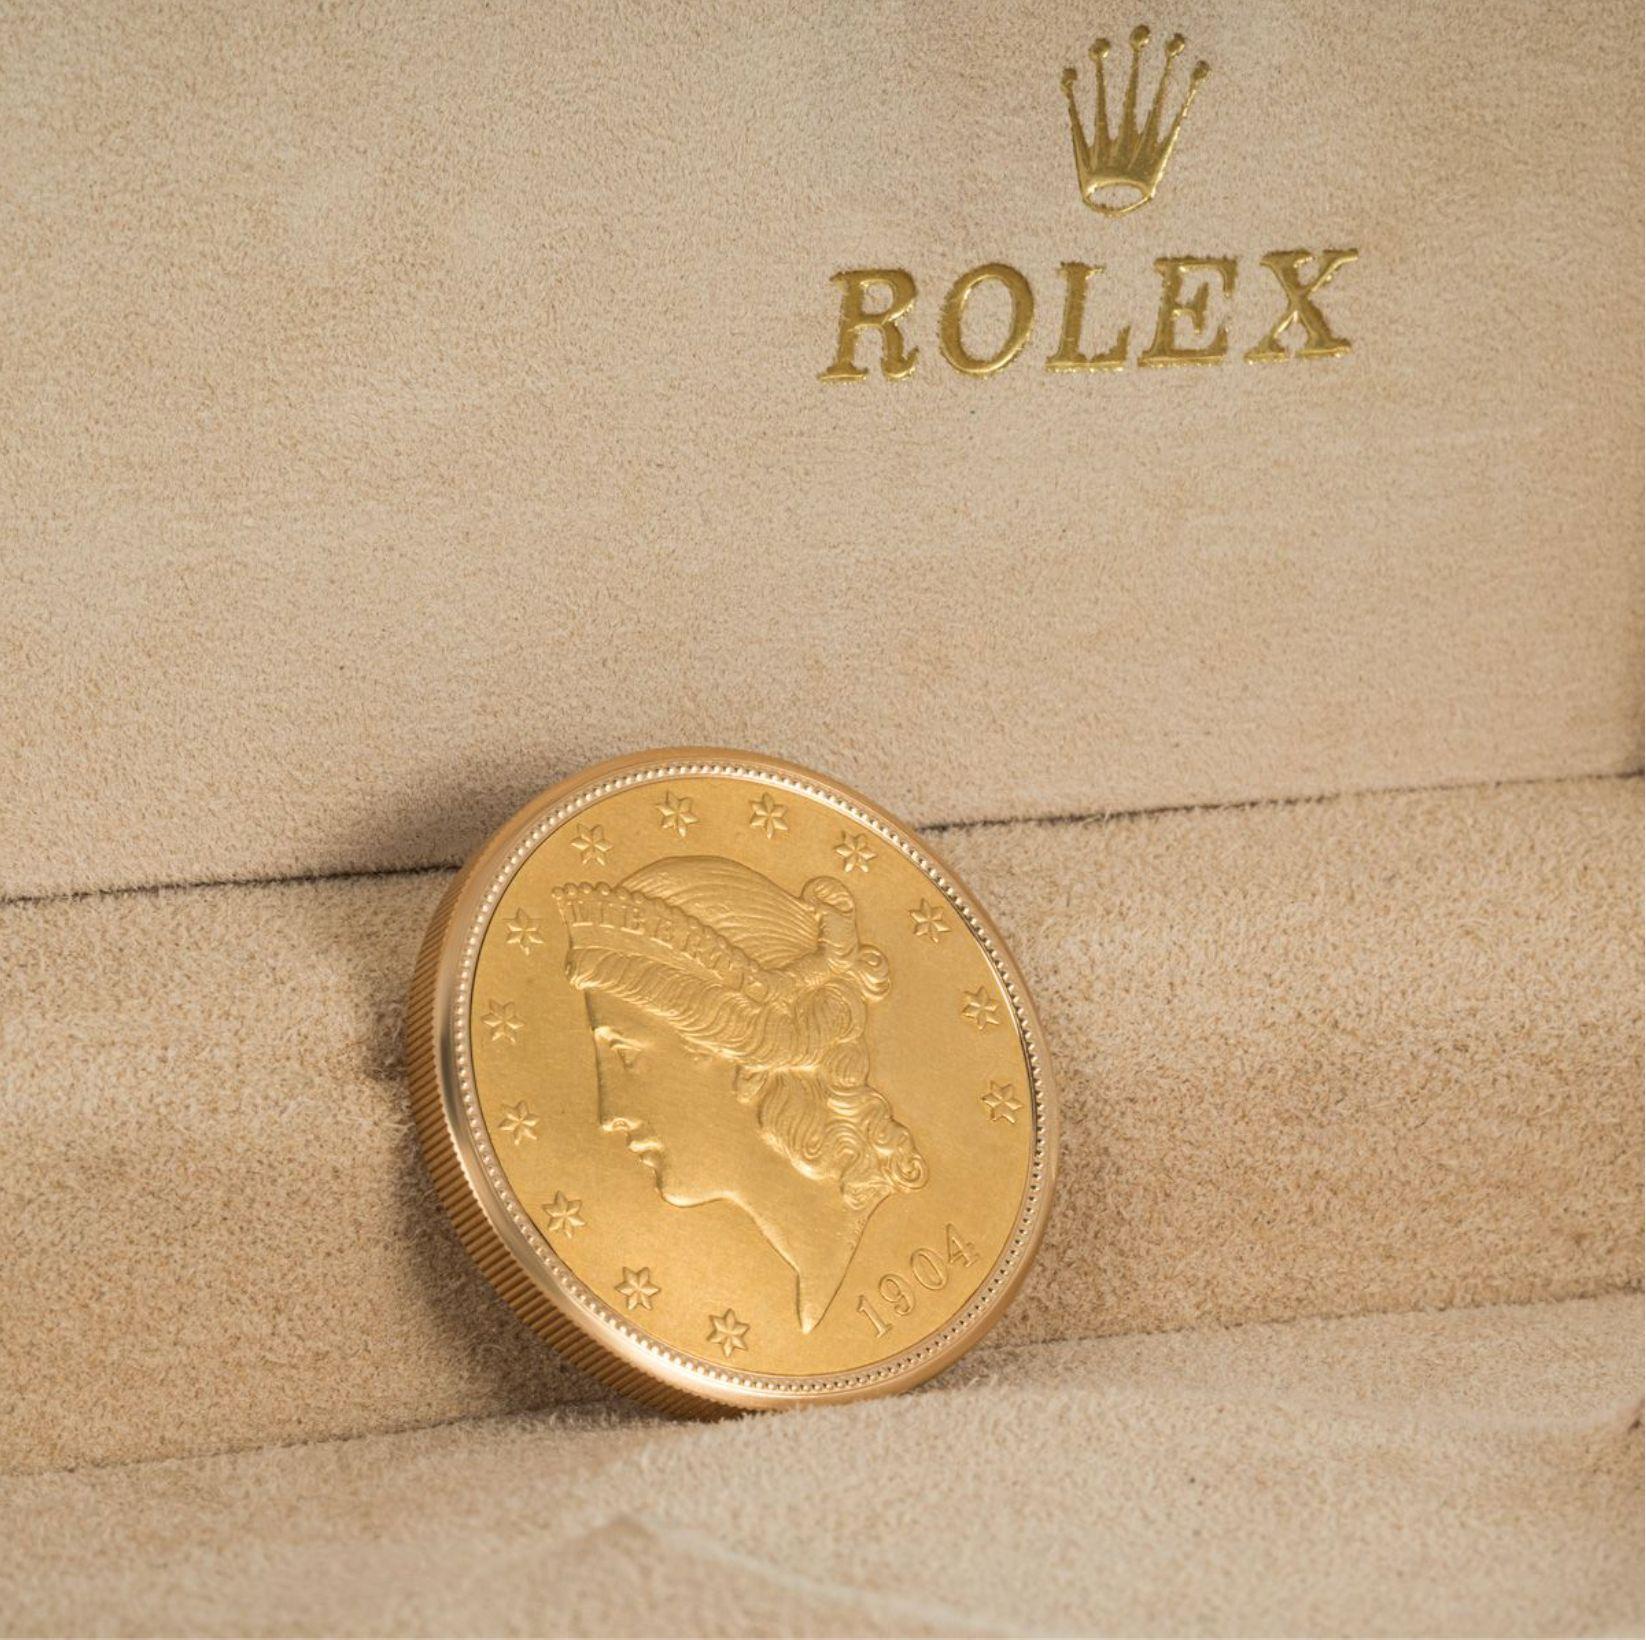 rolex coin watch